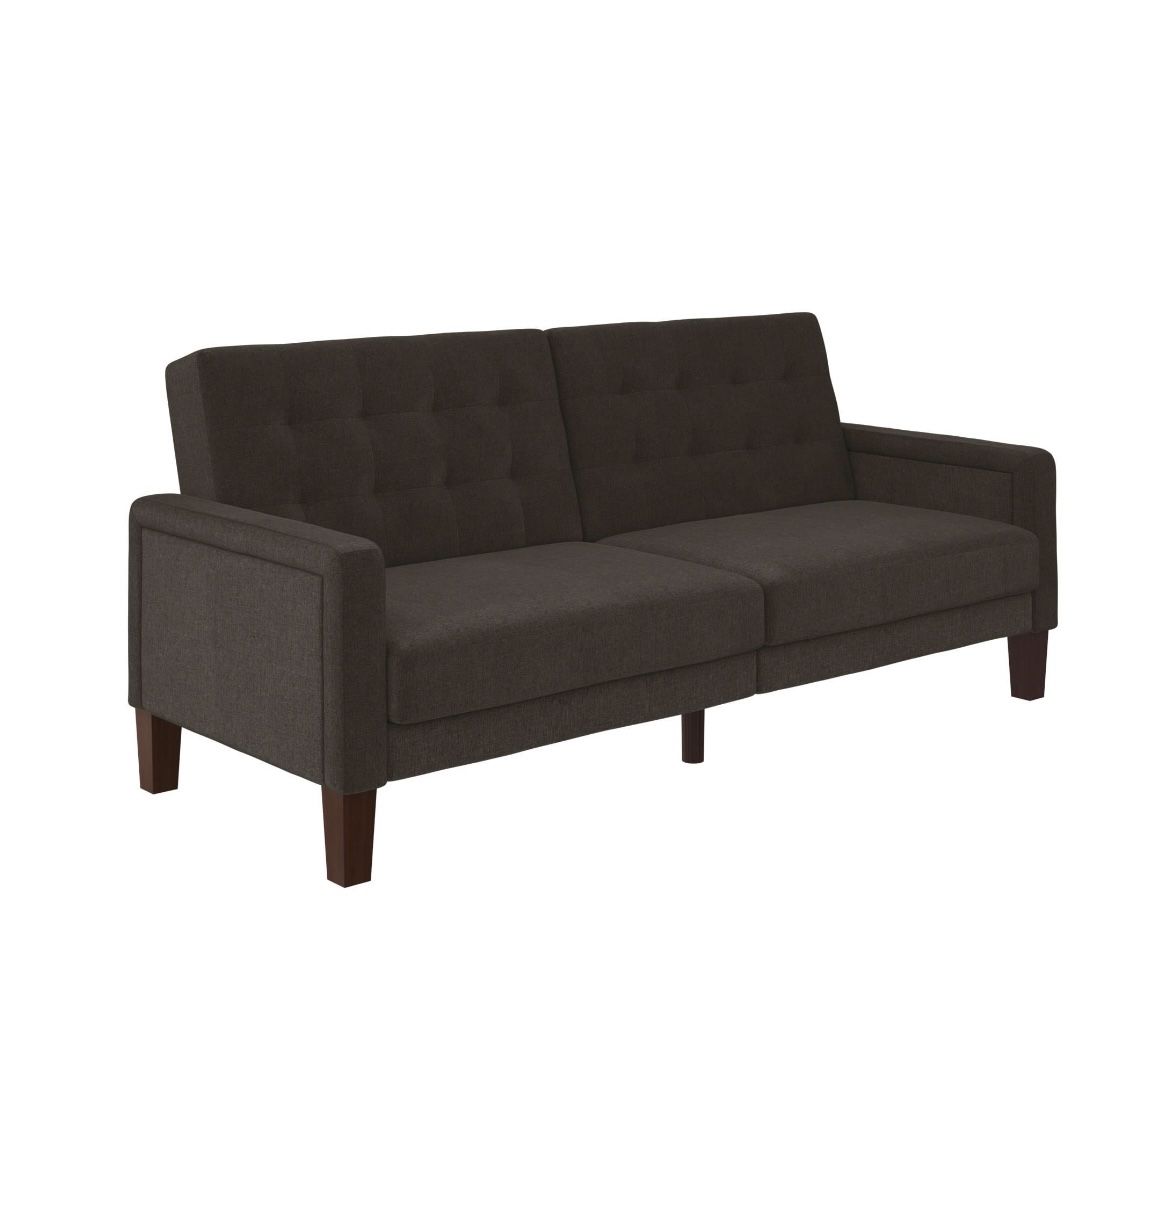 Sofa: Tufted Futon